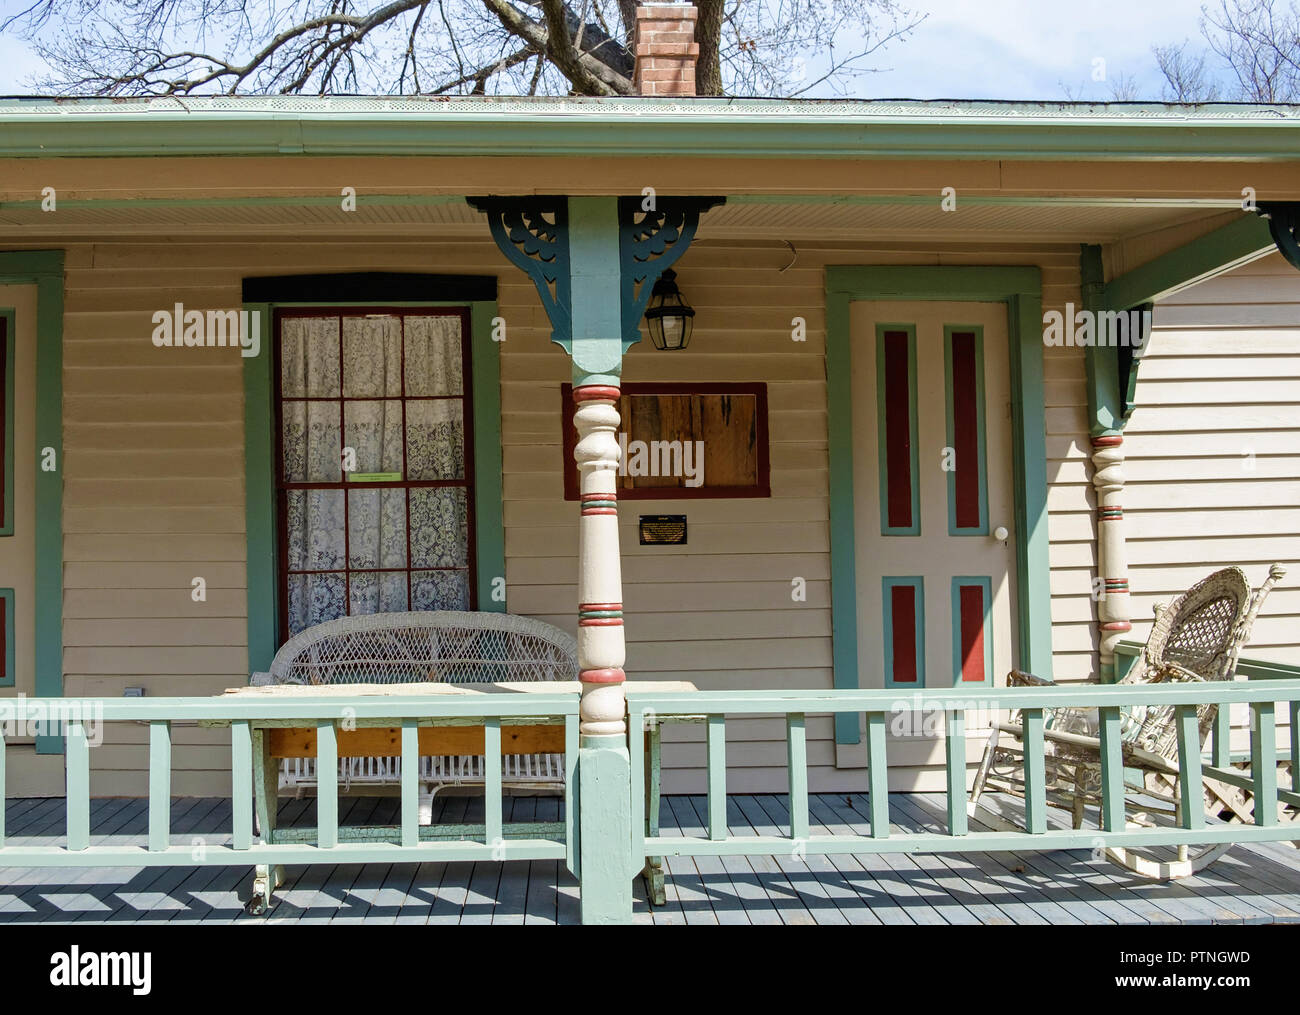 Überdachte Veranda auf Weiß geschuppt altes Haus mit blauem Trimm. Schaukelstuhl, Zweisitzersofa. Dulaney Cottage, Kastanie Square Historic Village, McKinney, Texas. Stockfoto